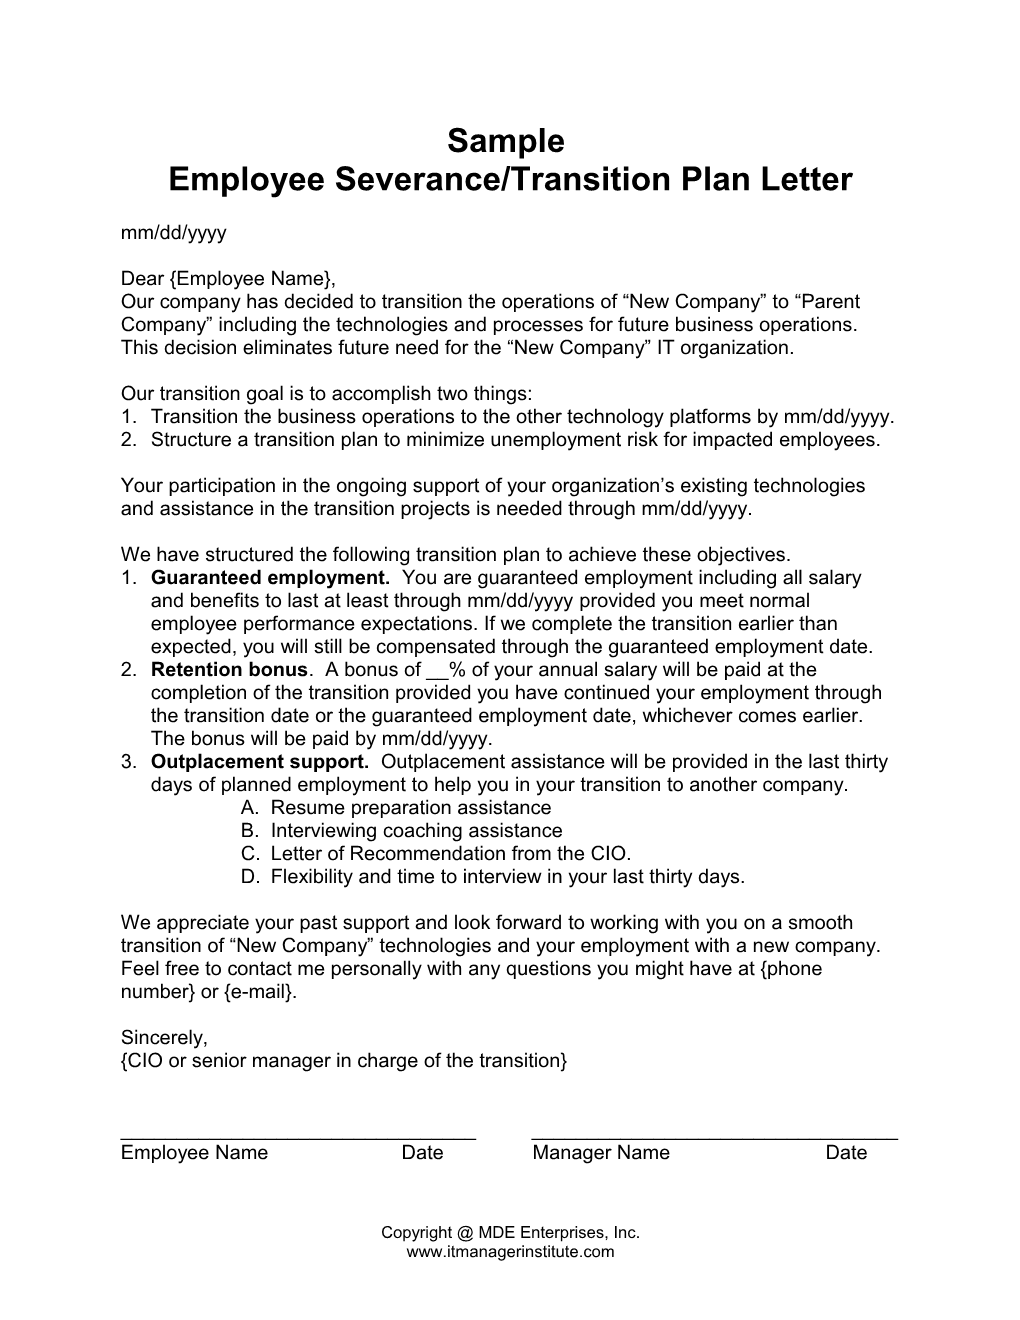 Sample Employee Severance/Transition Plan Letter